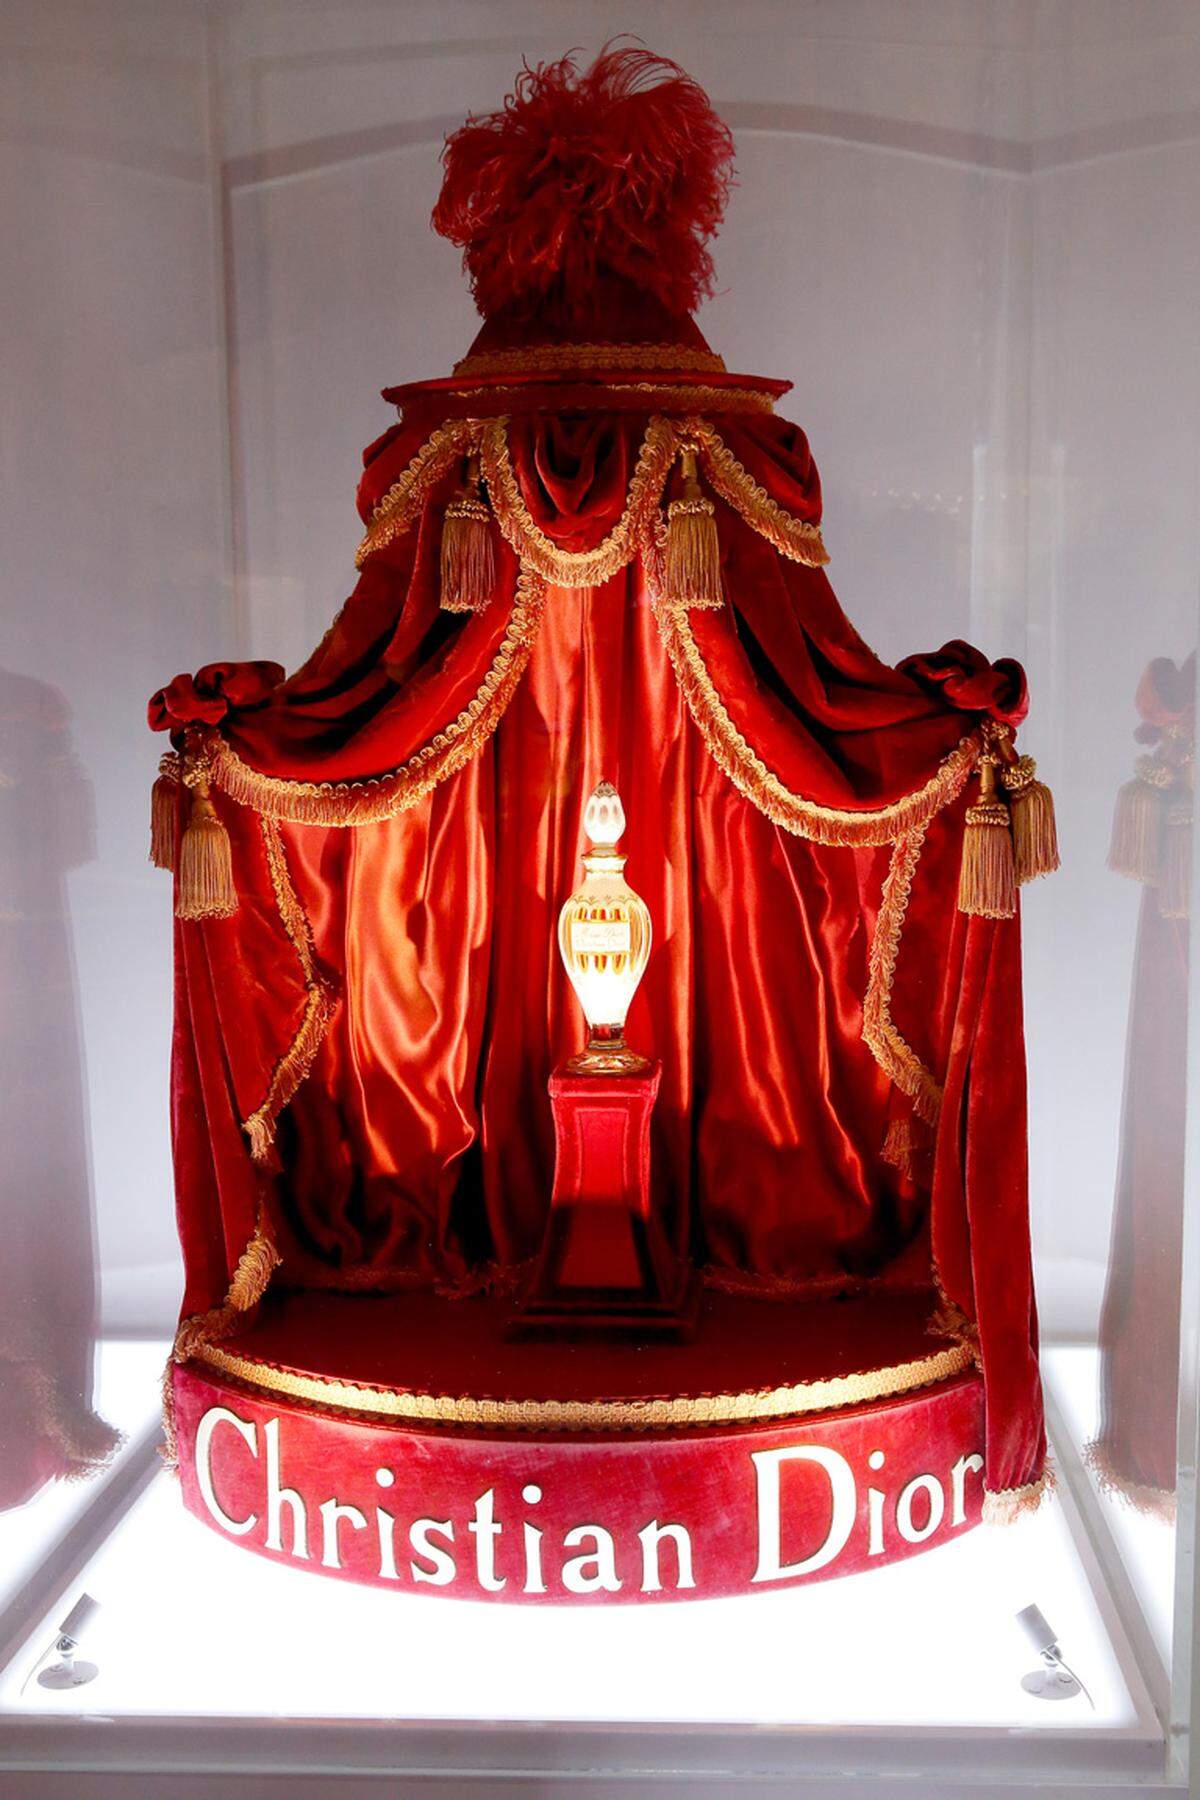 Miss Dior, dem erste Parfum, das von Christian Dior 1947 kreiert wurde, ist jetzt eine Ausstellung im Grand Palais Paris gewidmet. 15 internationale Künstlerinnen wurden von dem Mode- und Beautyhaus engagiert um ihrer Assoziationen mit dem Duft künstlerischen Ausdruck zu verleihen.